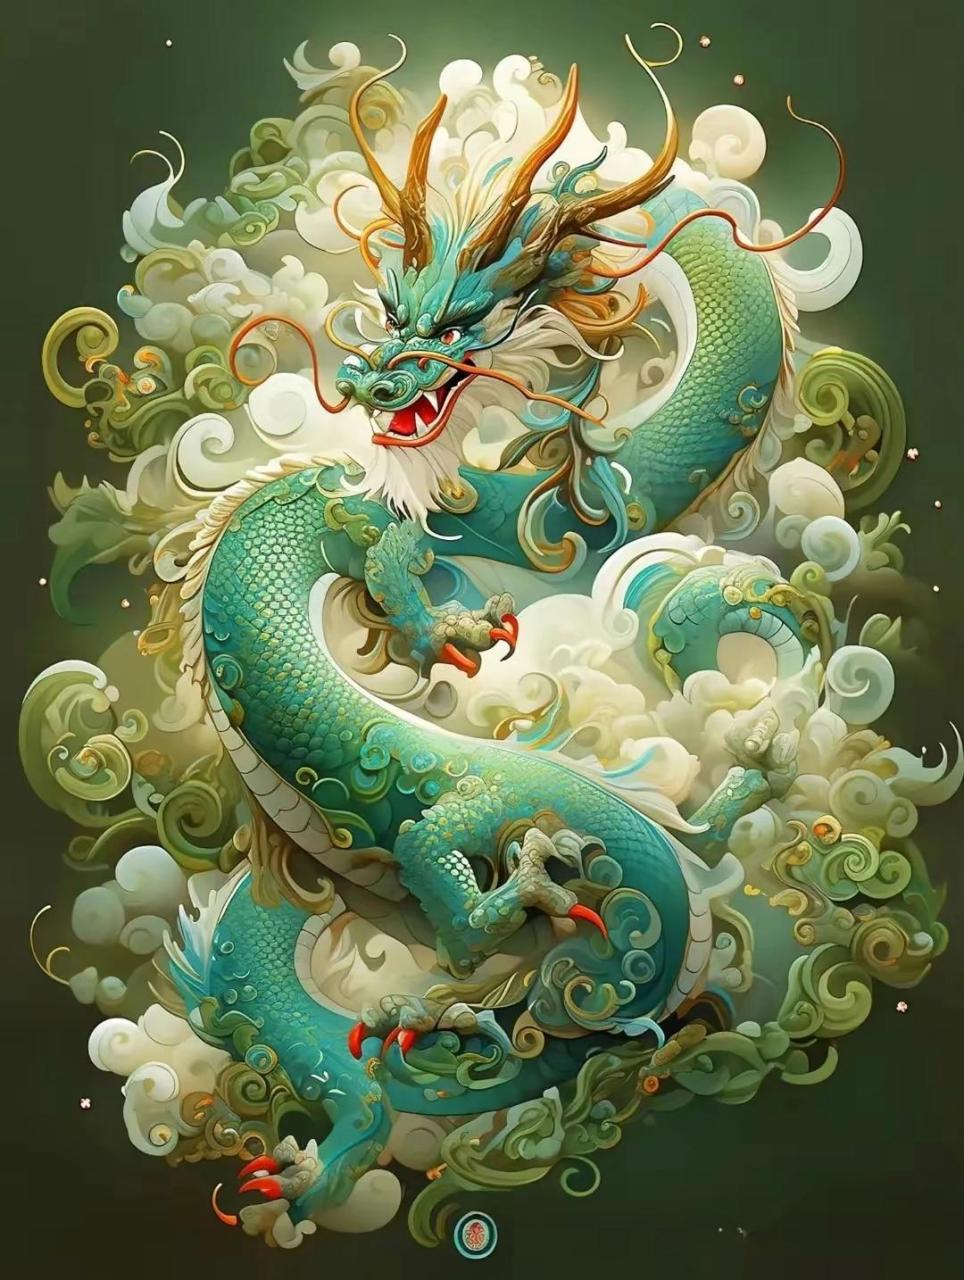 青龙,又称苍龙,孟章,是中国古代神话传说中的形象,为天之四灵只一